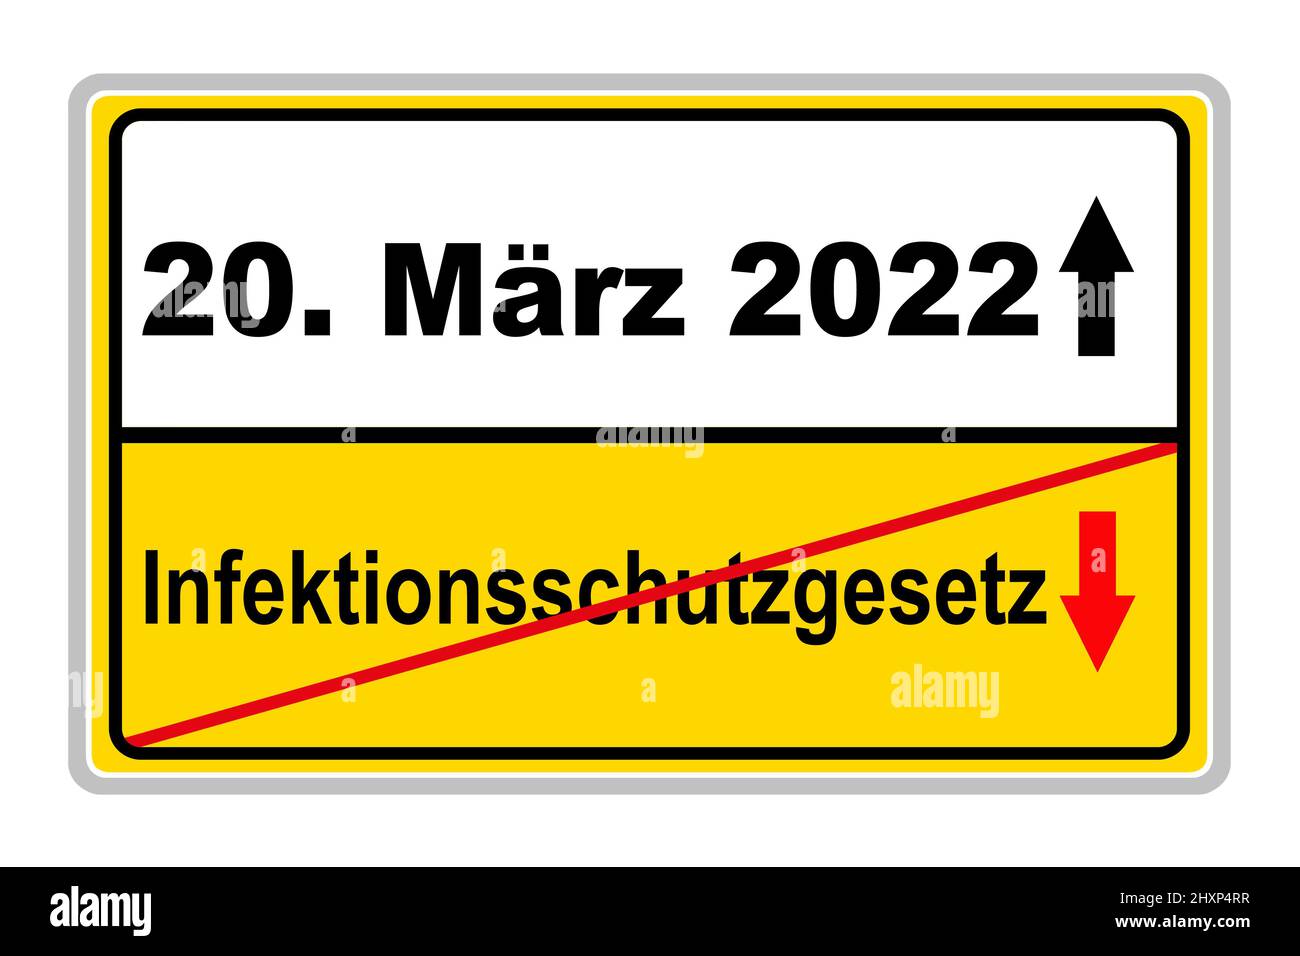 Corona Pandemie und Deutsches Schild mit Datum 20. März 2022 und Infektionschutzgesetz auf weissem Hintergrund Stock Photo